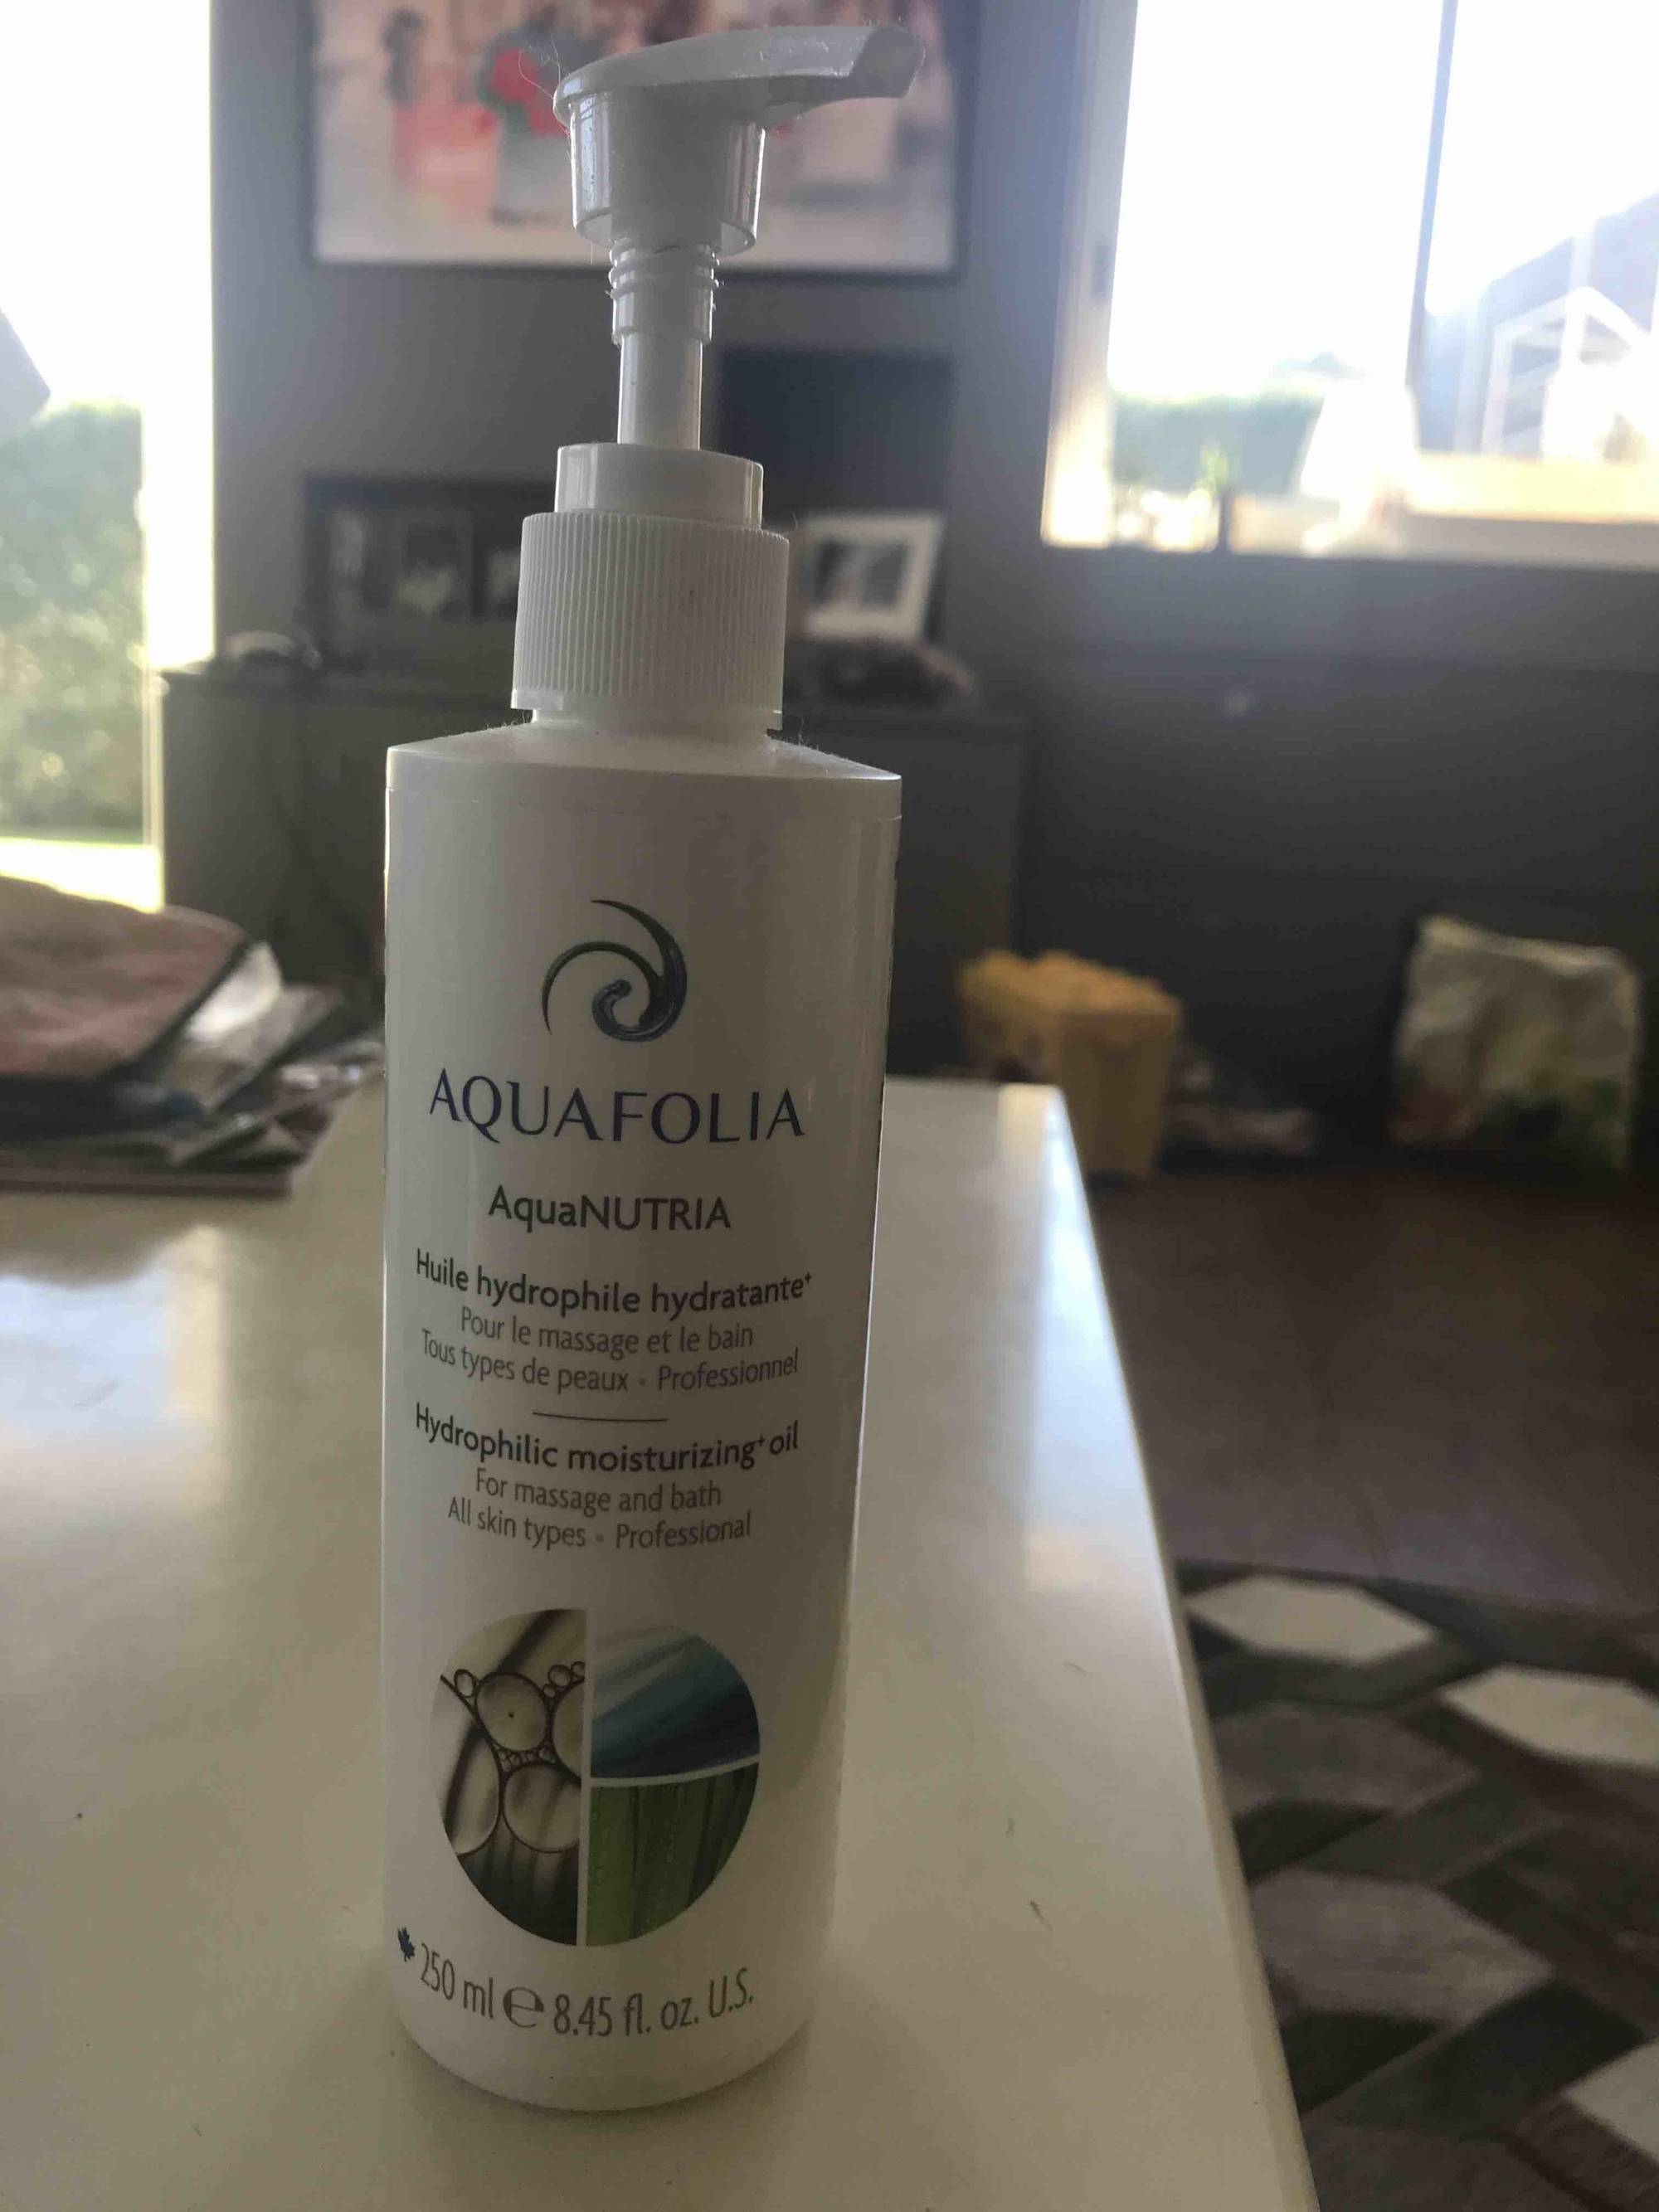 AQUAFOLIA - Aquanutria - Huile hydrophile hydratante